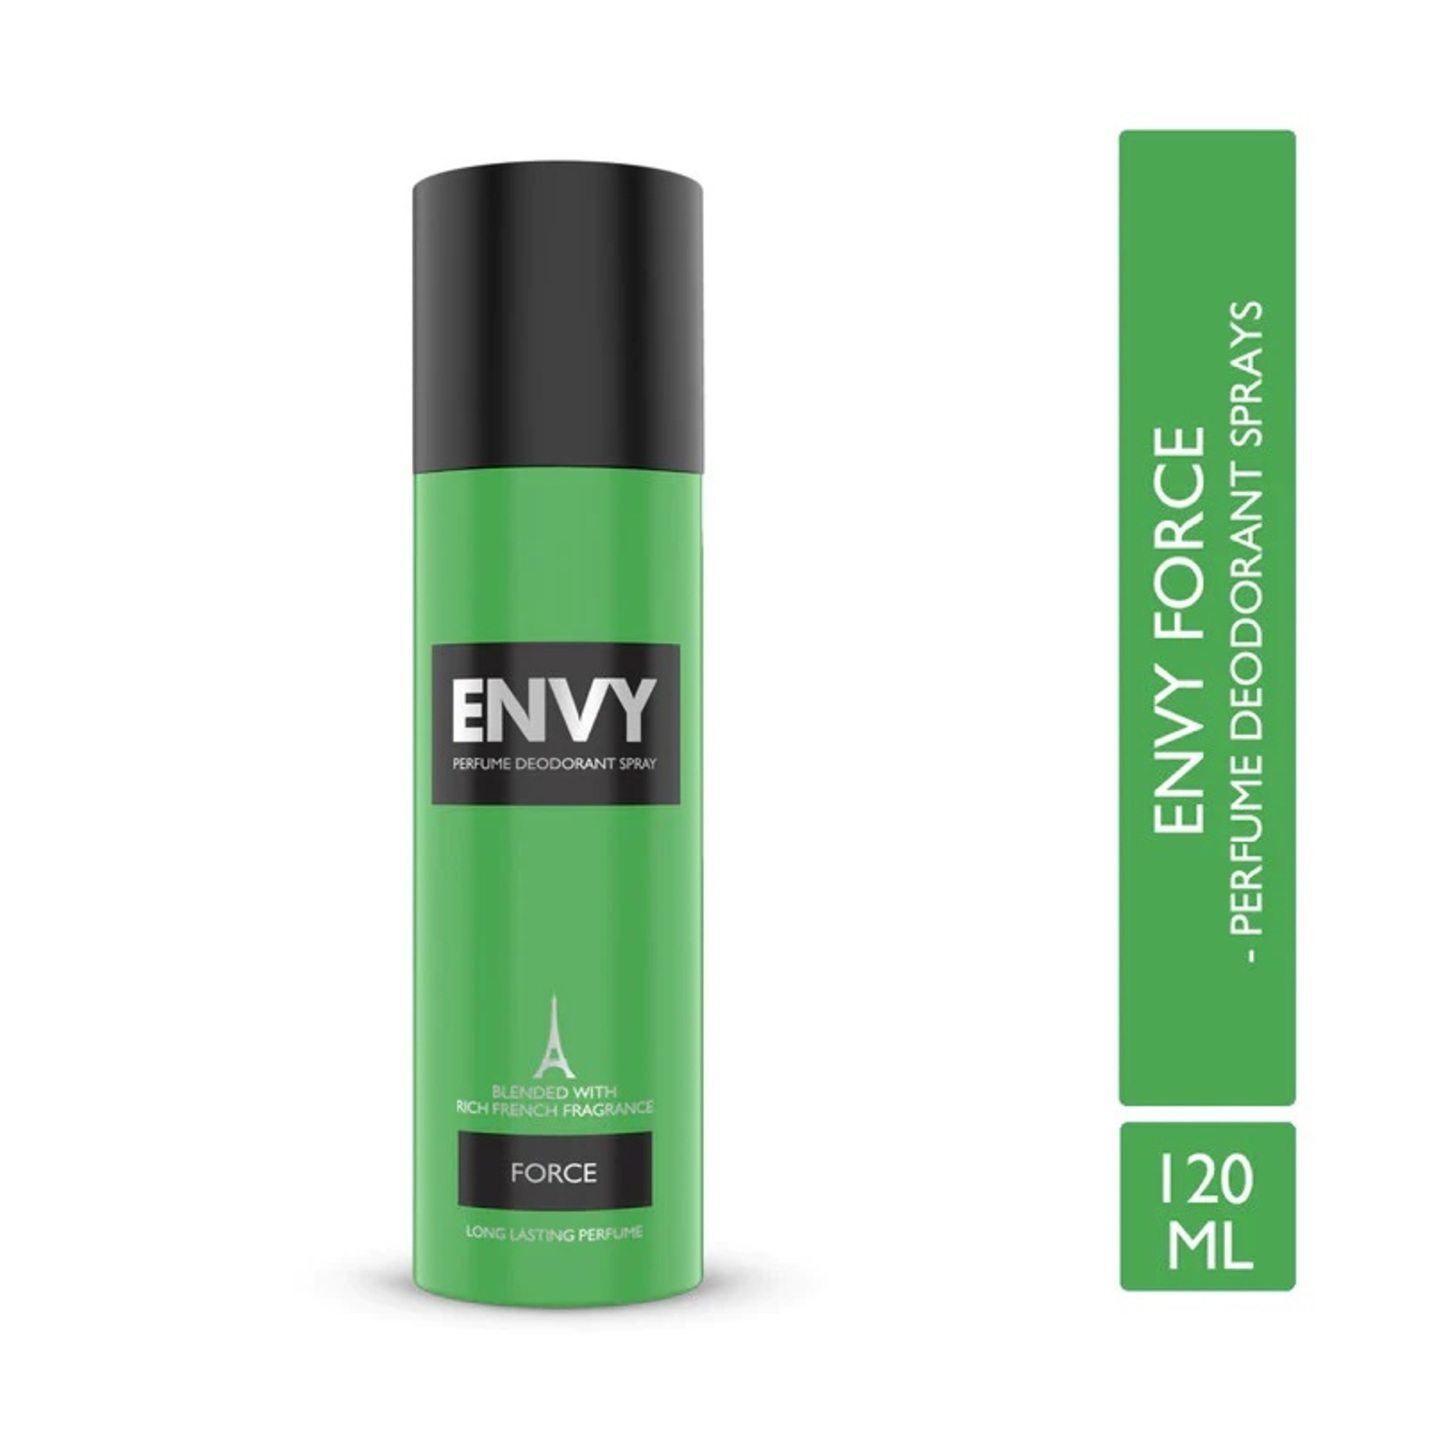 Envy Force Deodorant For Men 120ml  InnerMan